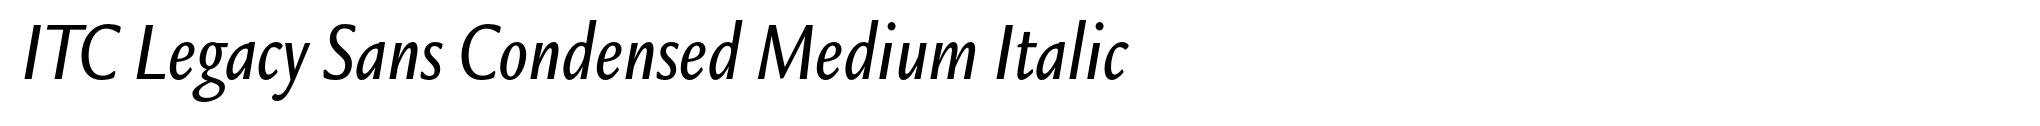 ITC Legacy Sans Condensed Medium Italic image